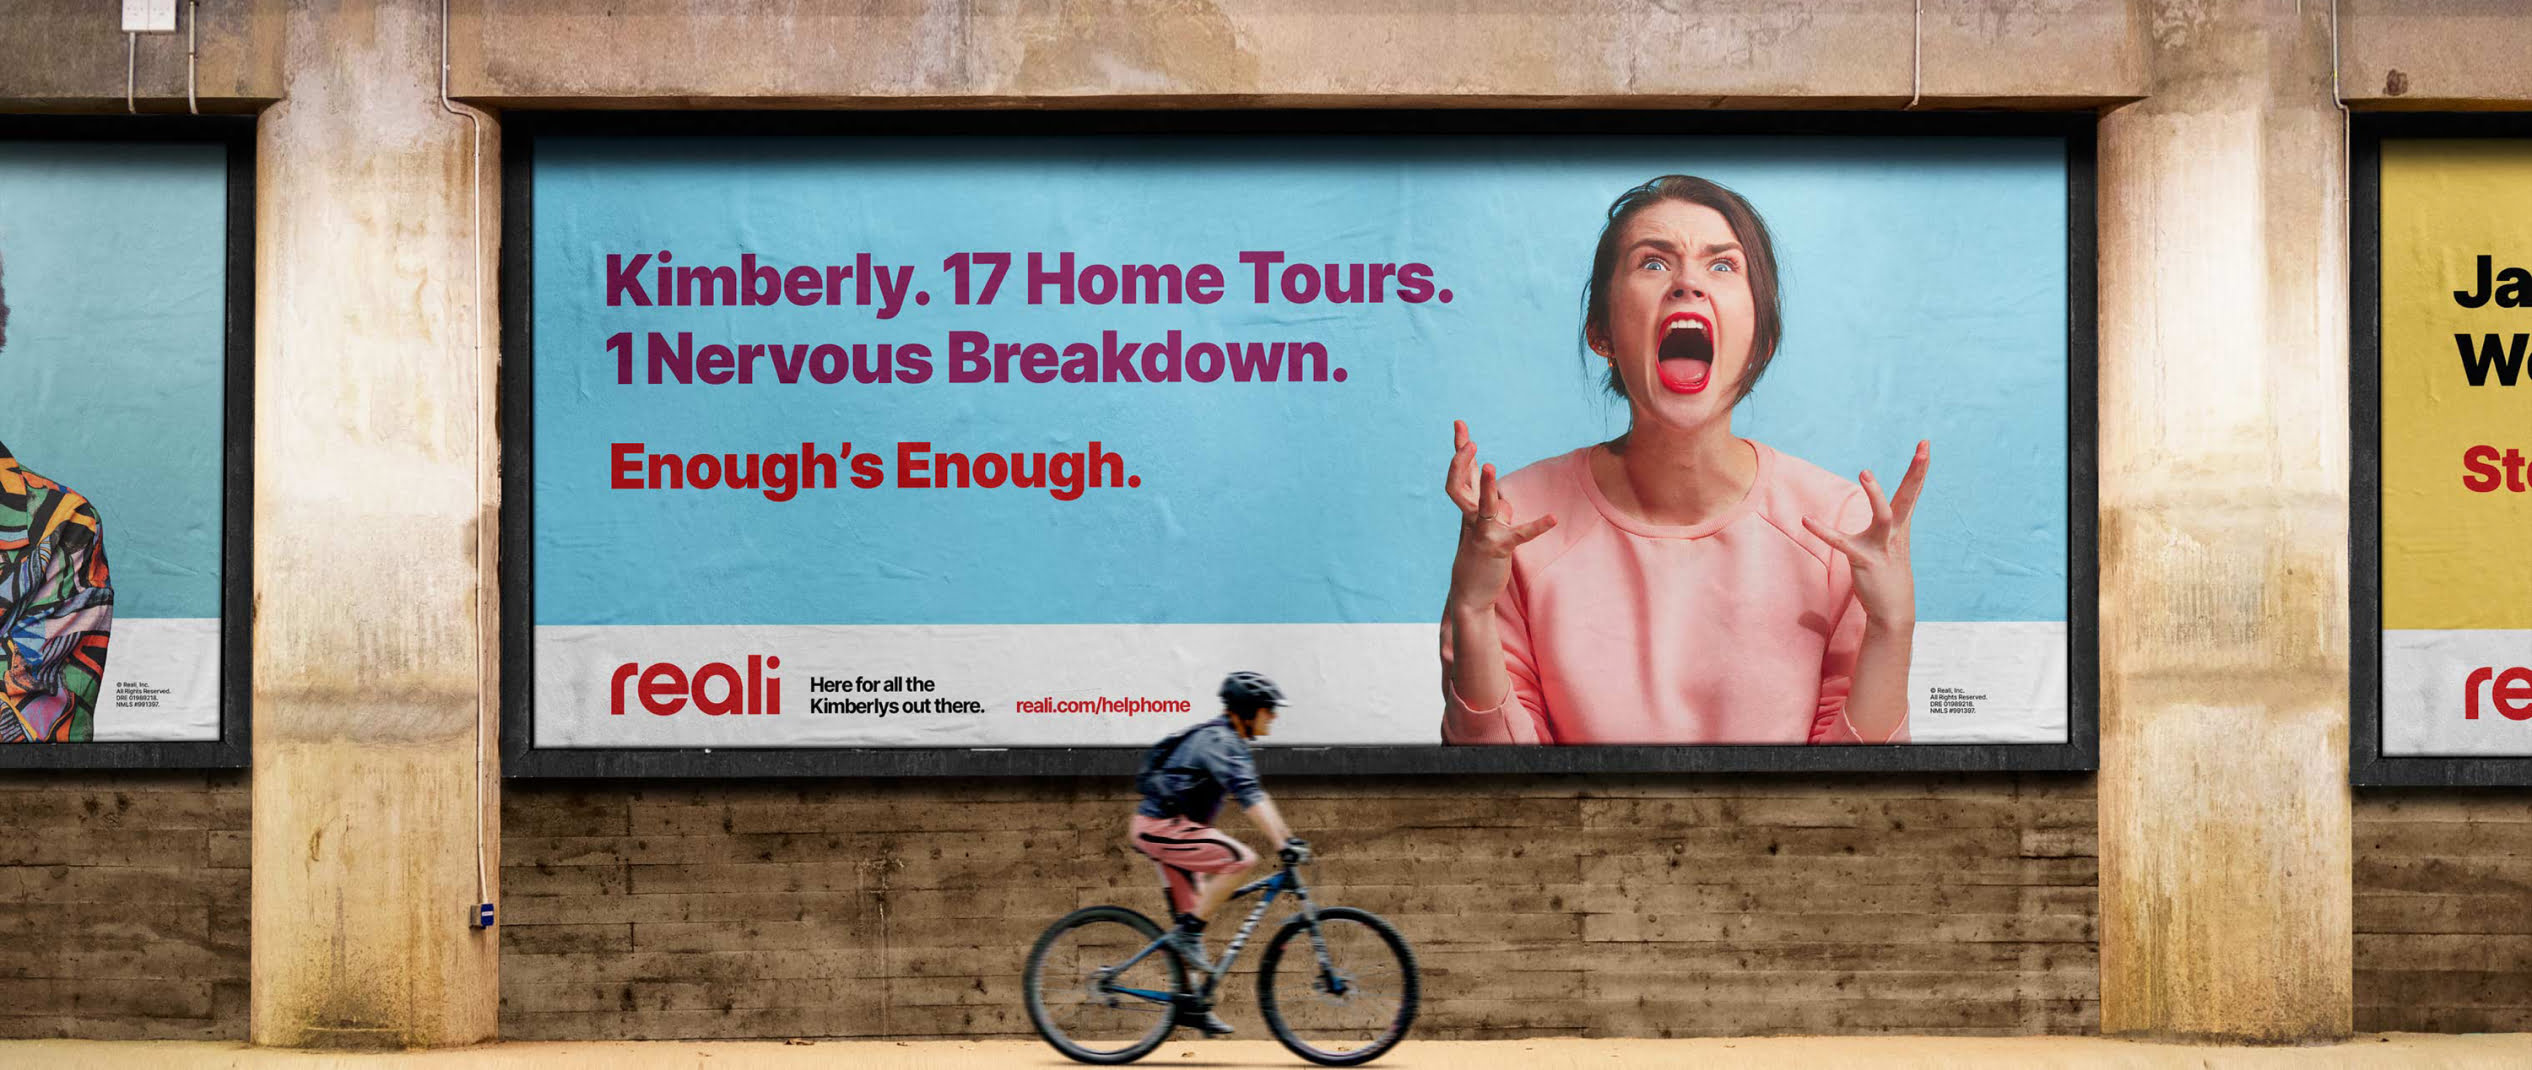 kris-poorbaugh-reali-transit-billboards-1-1